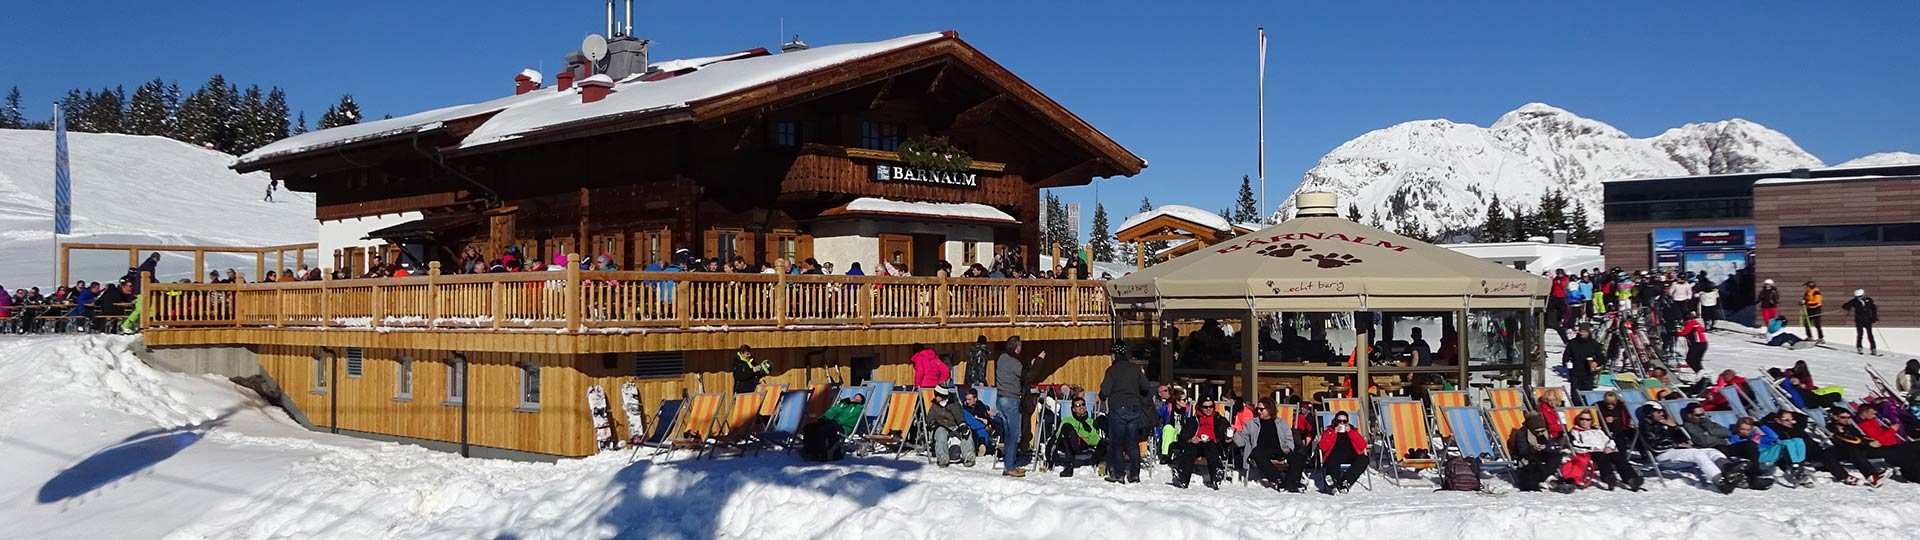 Berggasthaus Bärnalm | Familiäre Gastlichkeit auf 1580m